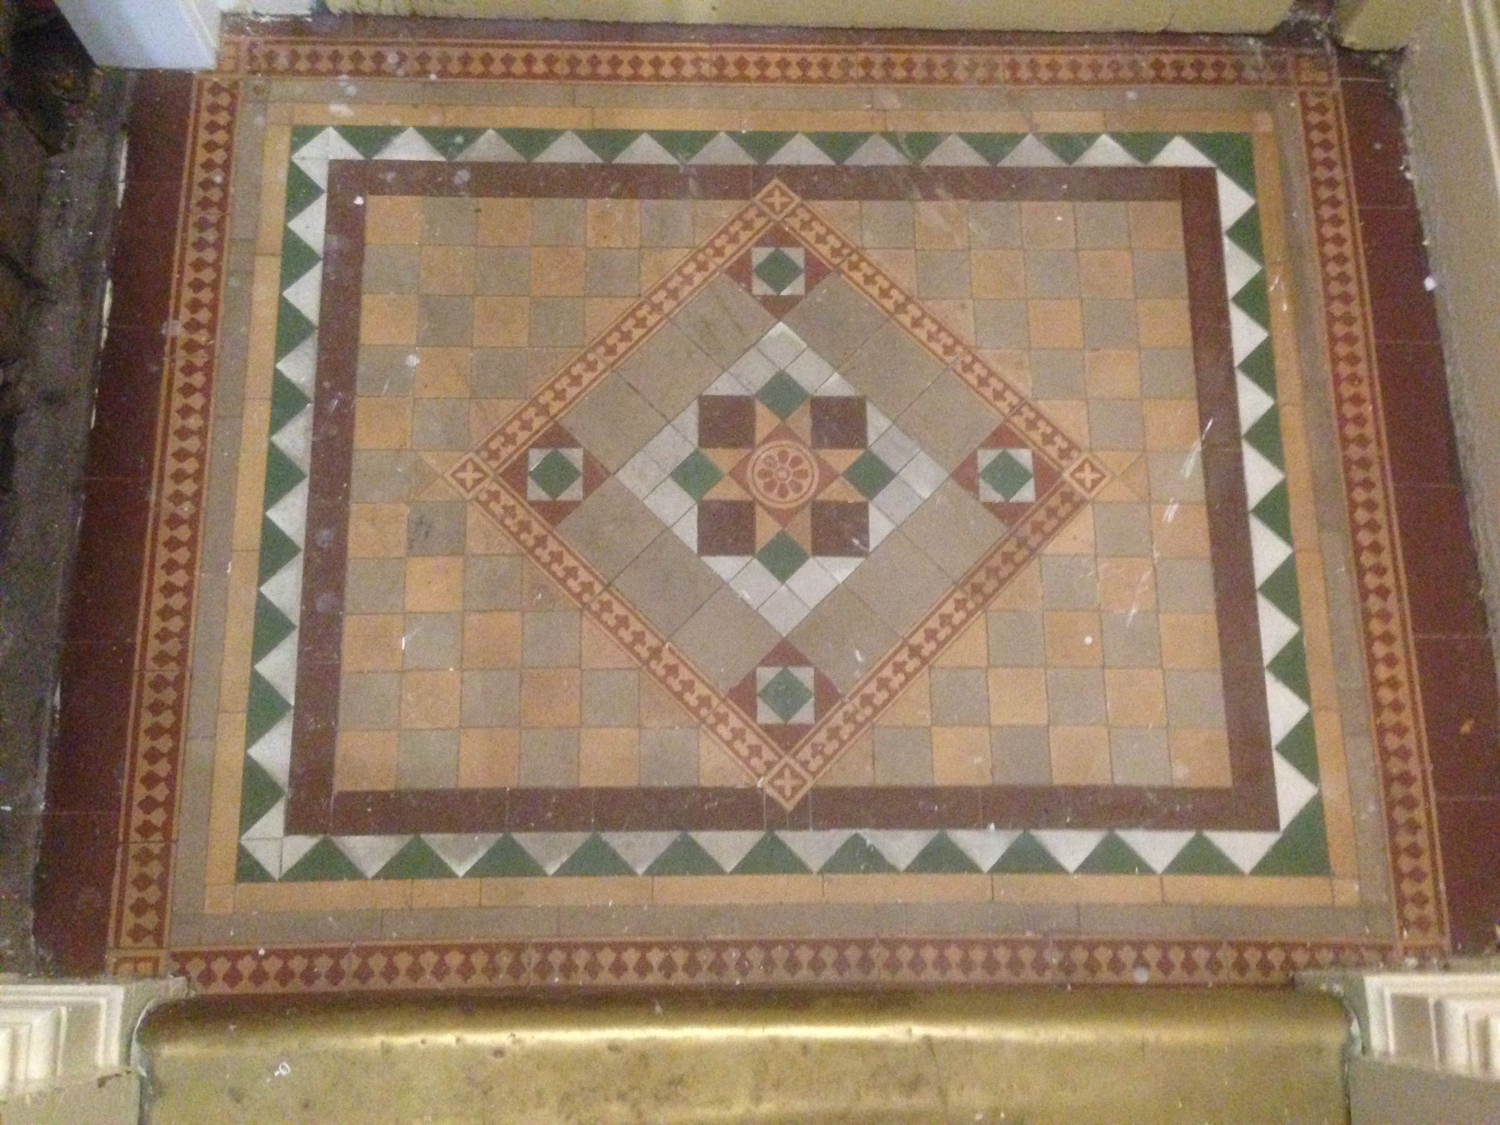 Victorian Tiles Floor Cleaning